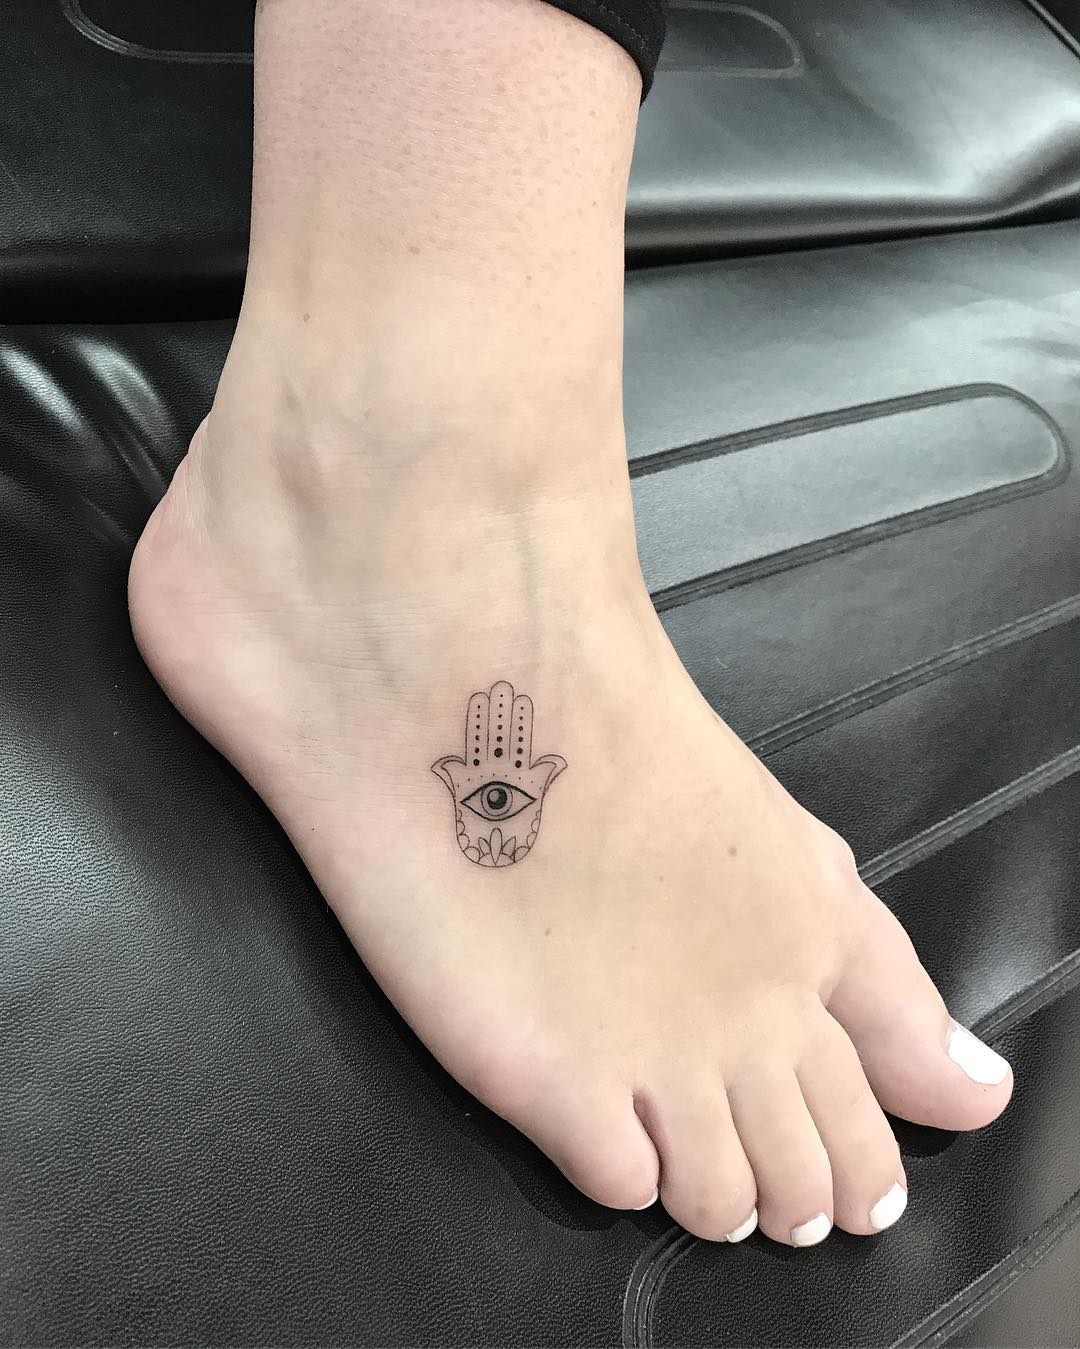 Tatuagem no pé 100 fotos de tattoos para você se inspirar